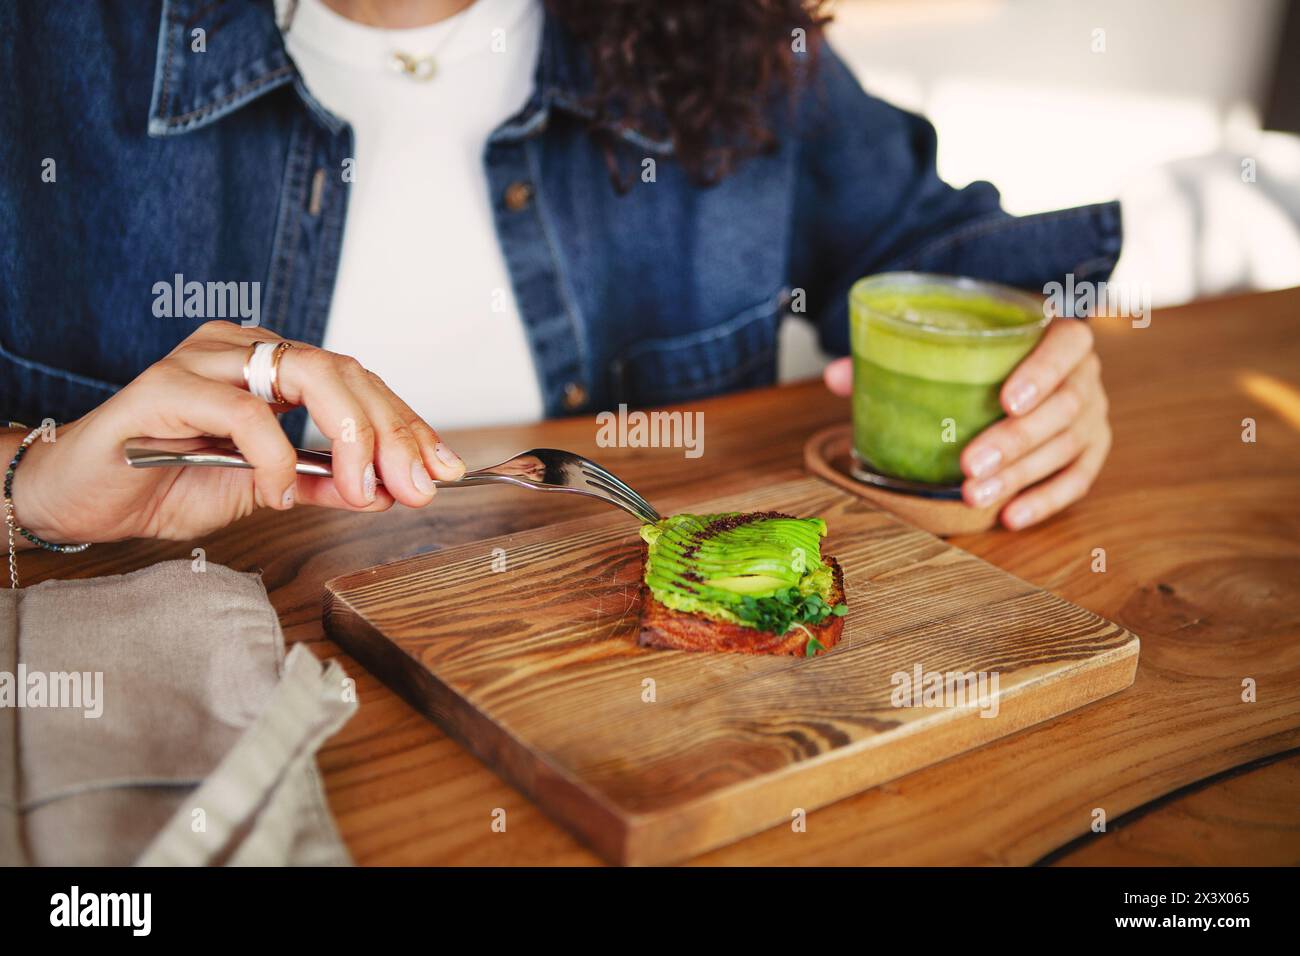 Feminine Hände halten Avocadotoast und grünen Smoothie in einem Restaurant und zeigen vegane gesunde Speisen. Stockfoto